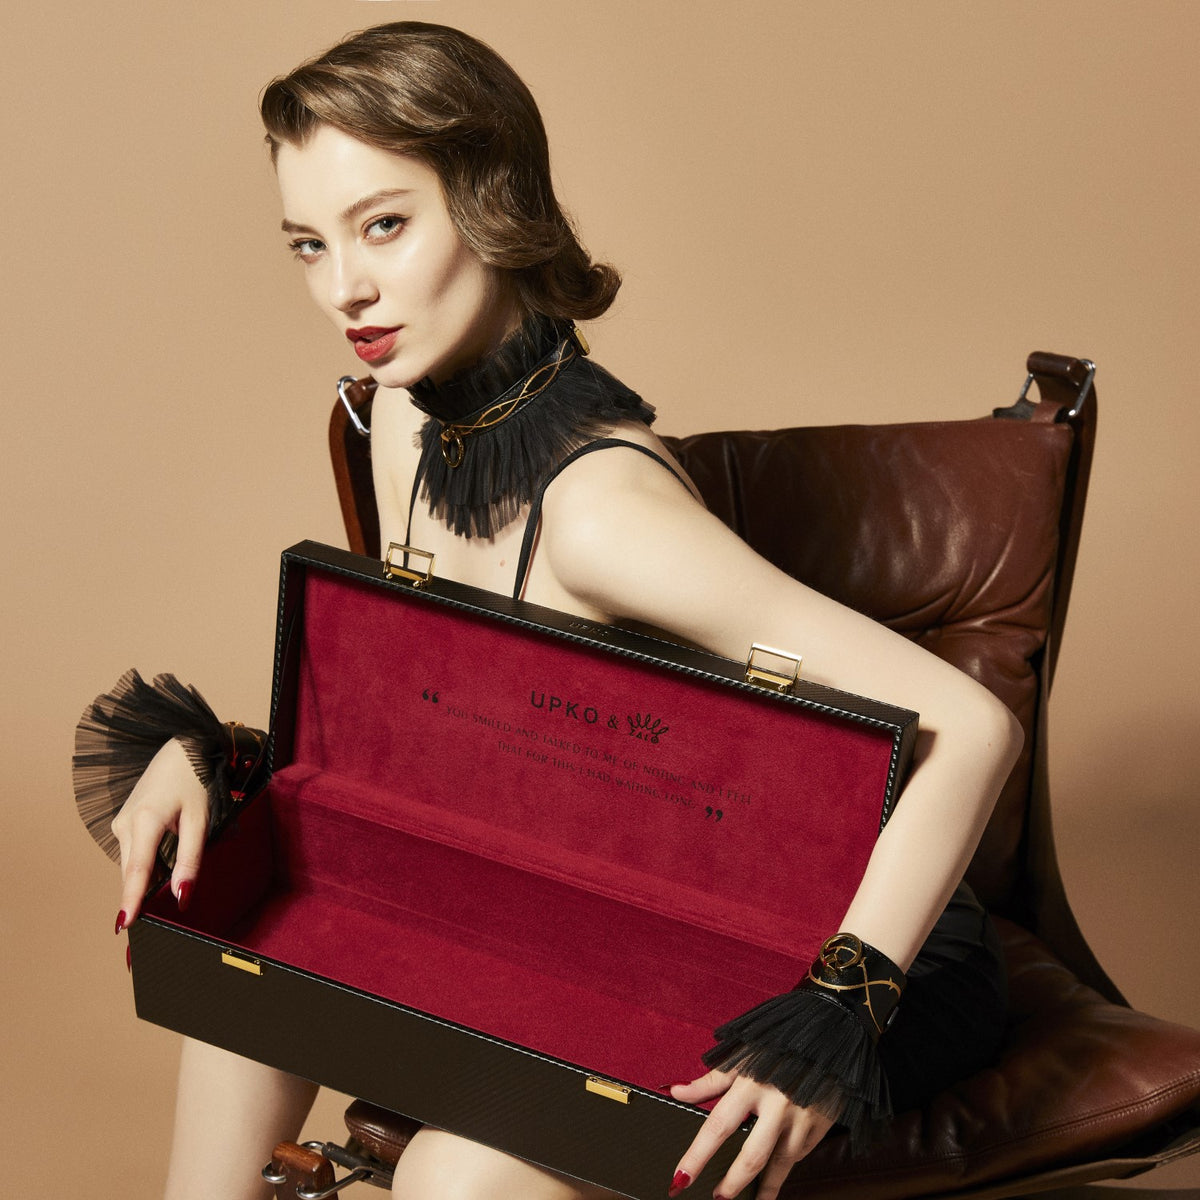 ZALO &amp; UPKO Doll Designer Collection Luxurious &amp; Romantic Bondage Play Kit